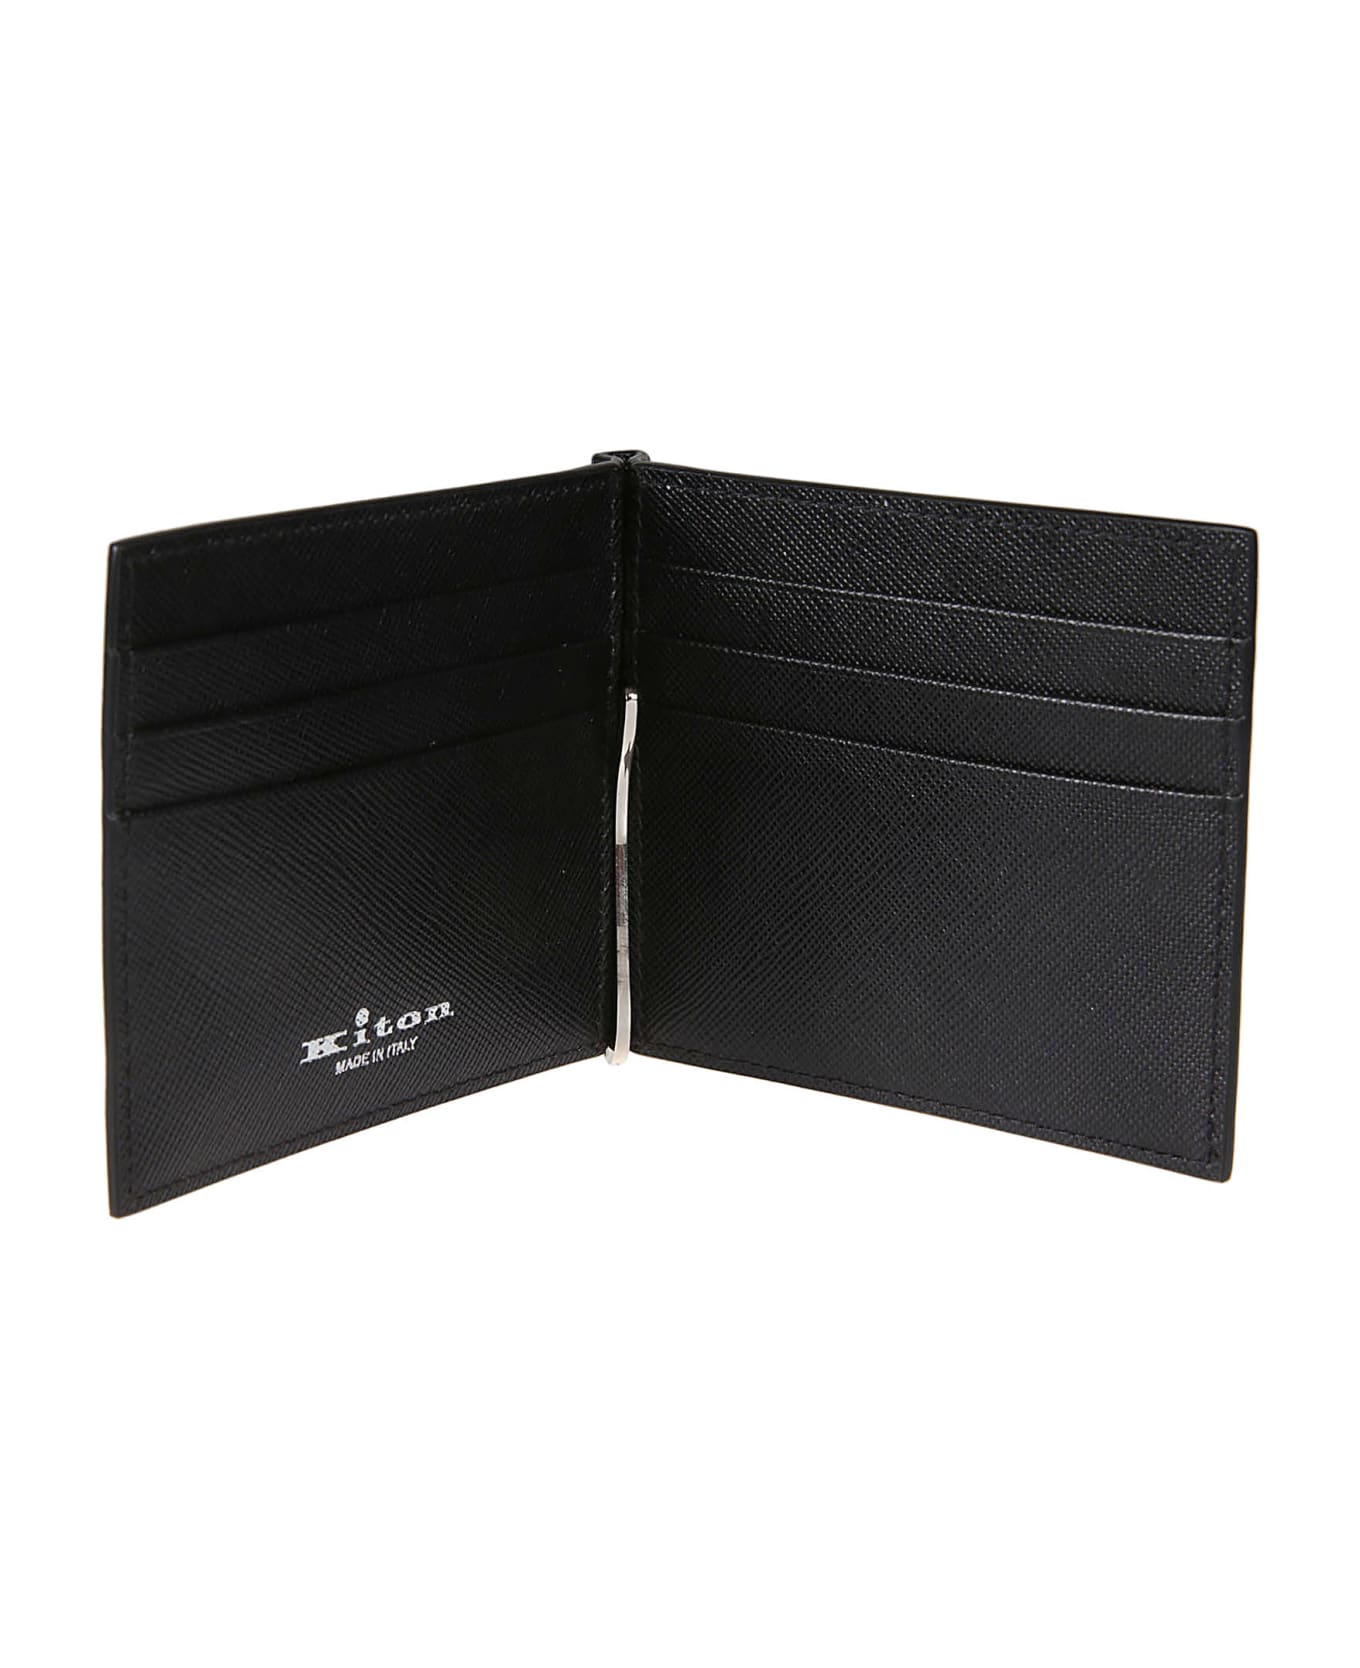 Kiton A013 Wallet - Nero 財布